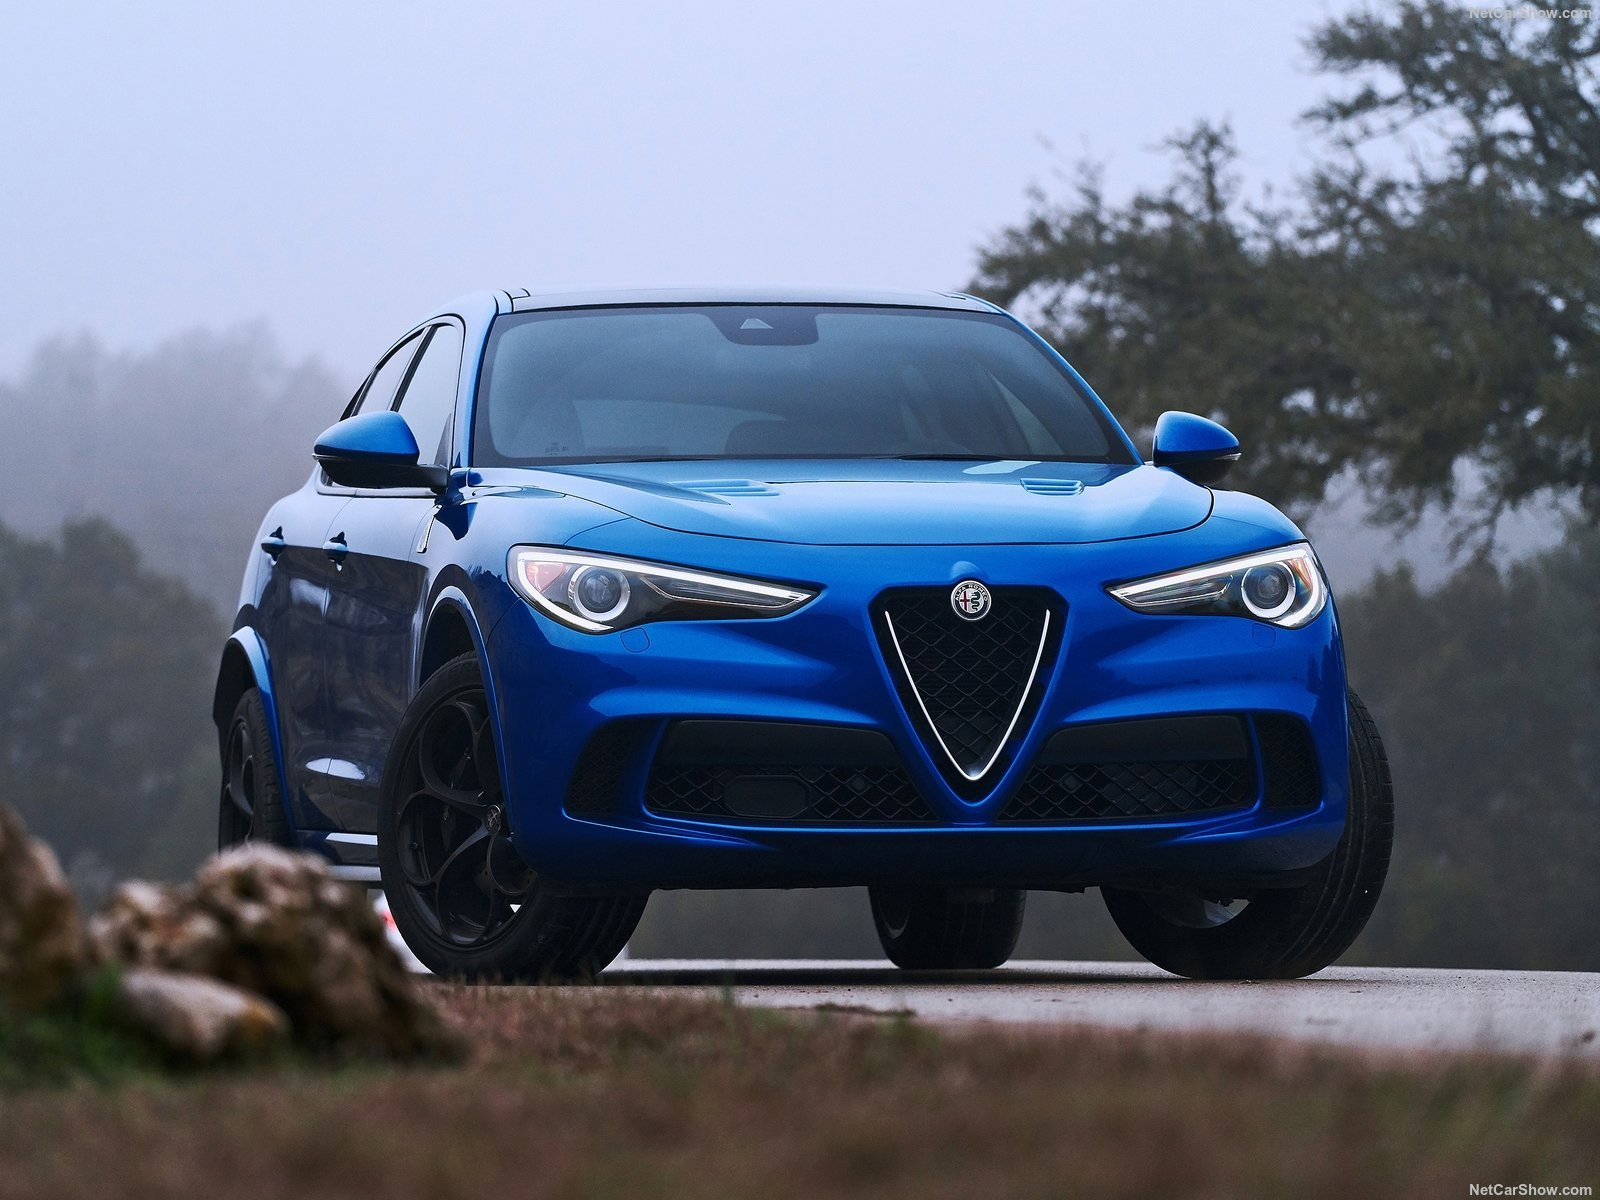 Alfa Romeo’nun SUV Modeli ‘Stelvio’ ile Tanışın